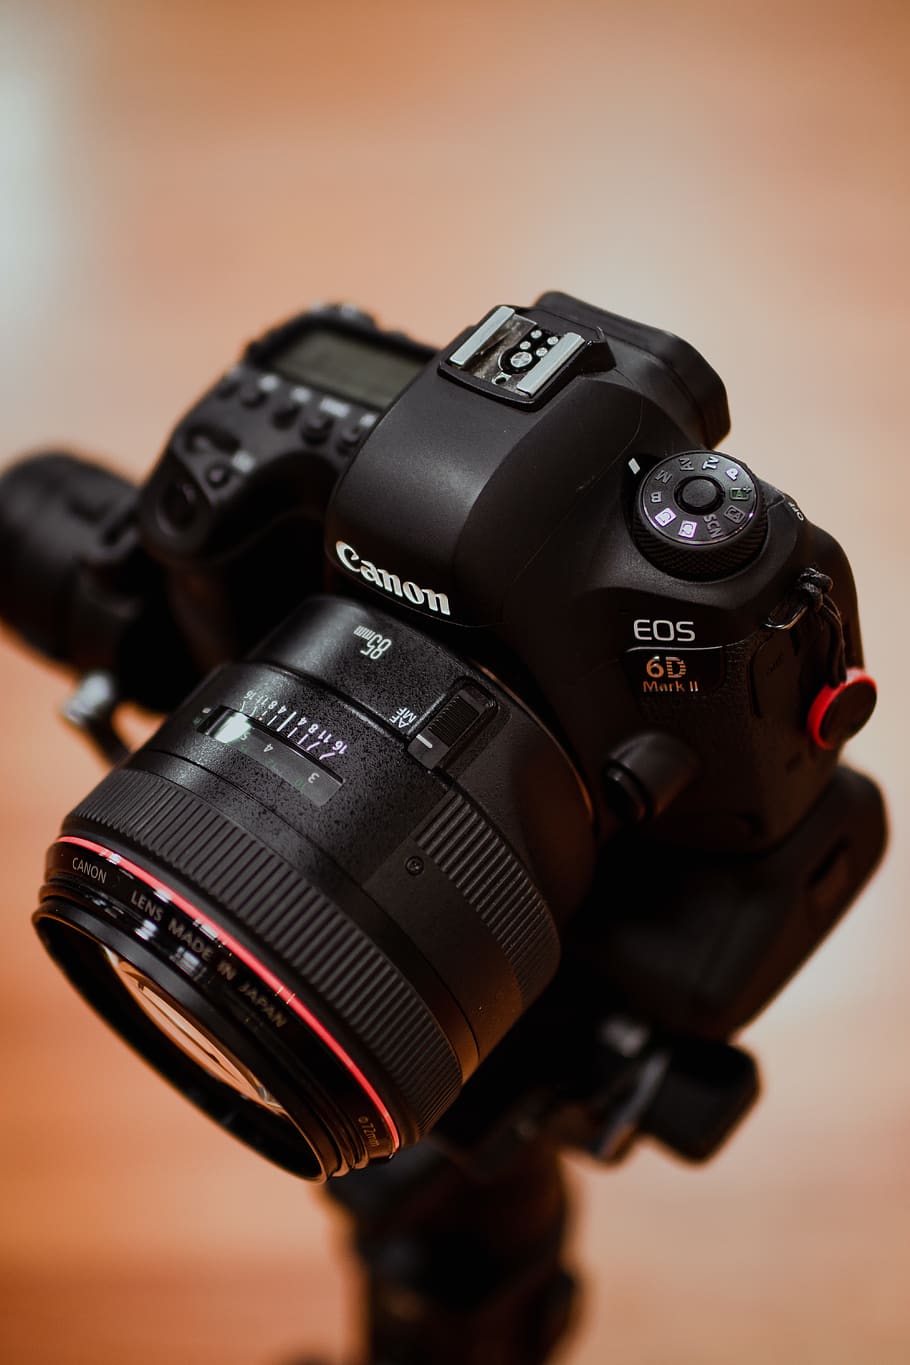 Hình nền Canon EOS 6D màu đen giúp bạn khám phá những tính năng tuyệt vời của chiếc máy ảnh mà không cần phải chi tiền mua sắm. Sự hoàn hảo tới từng chi tiết, với gam màu đen chủ đạo làm nổi bật vẻ đẹp của chiếc máy ảnh. Sẽ rất tiếc nếu bạn bỏ lỡ bộ ảnh này!